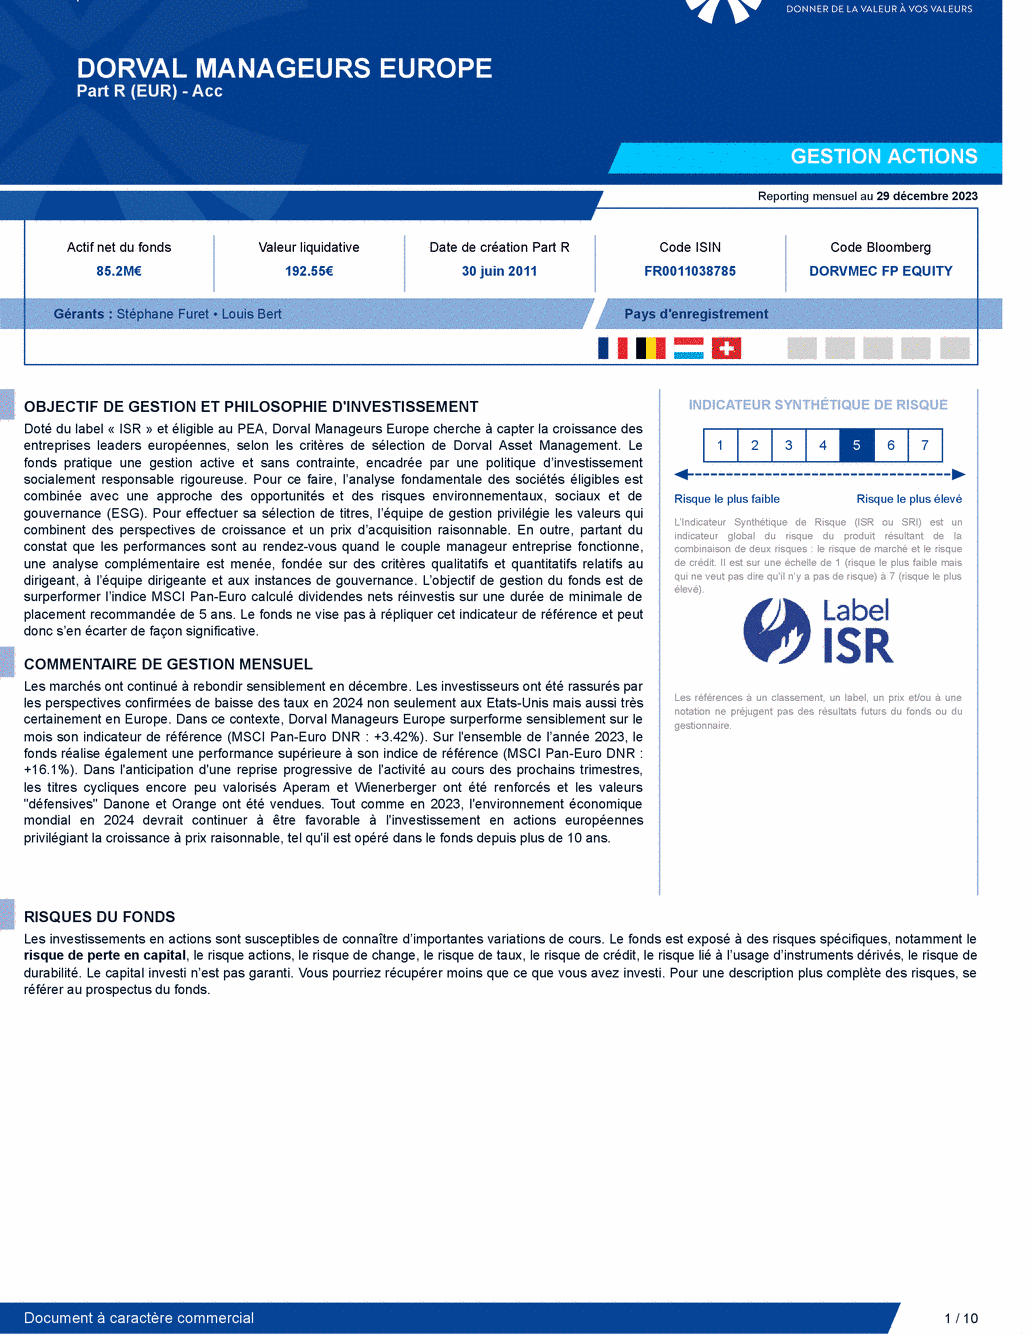 Reporting DORVAL MANAGEURS EUROPE - 29/12/2023 - Français